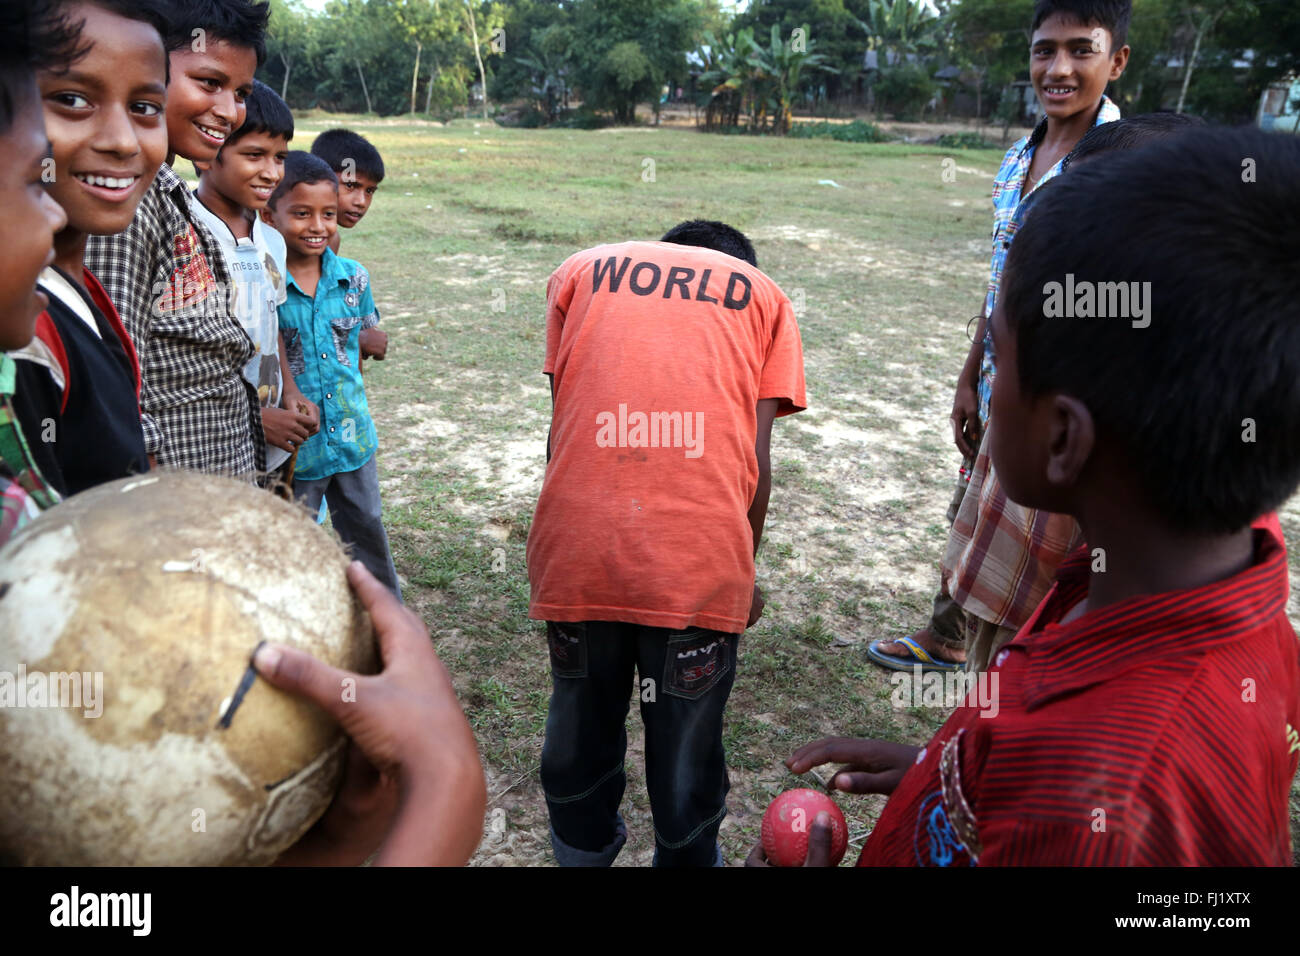 Glücklich lächelnde Kinder spielen Fußball mit 'Welt' t-shirt in Sreemangal, Bangladesch Stockfoto